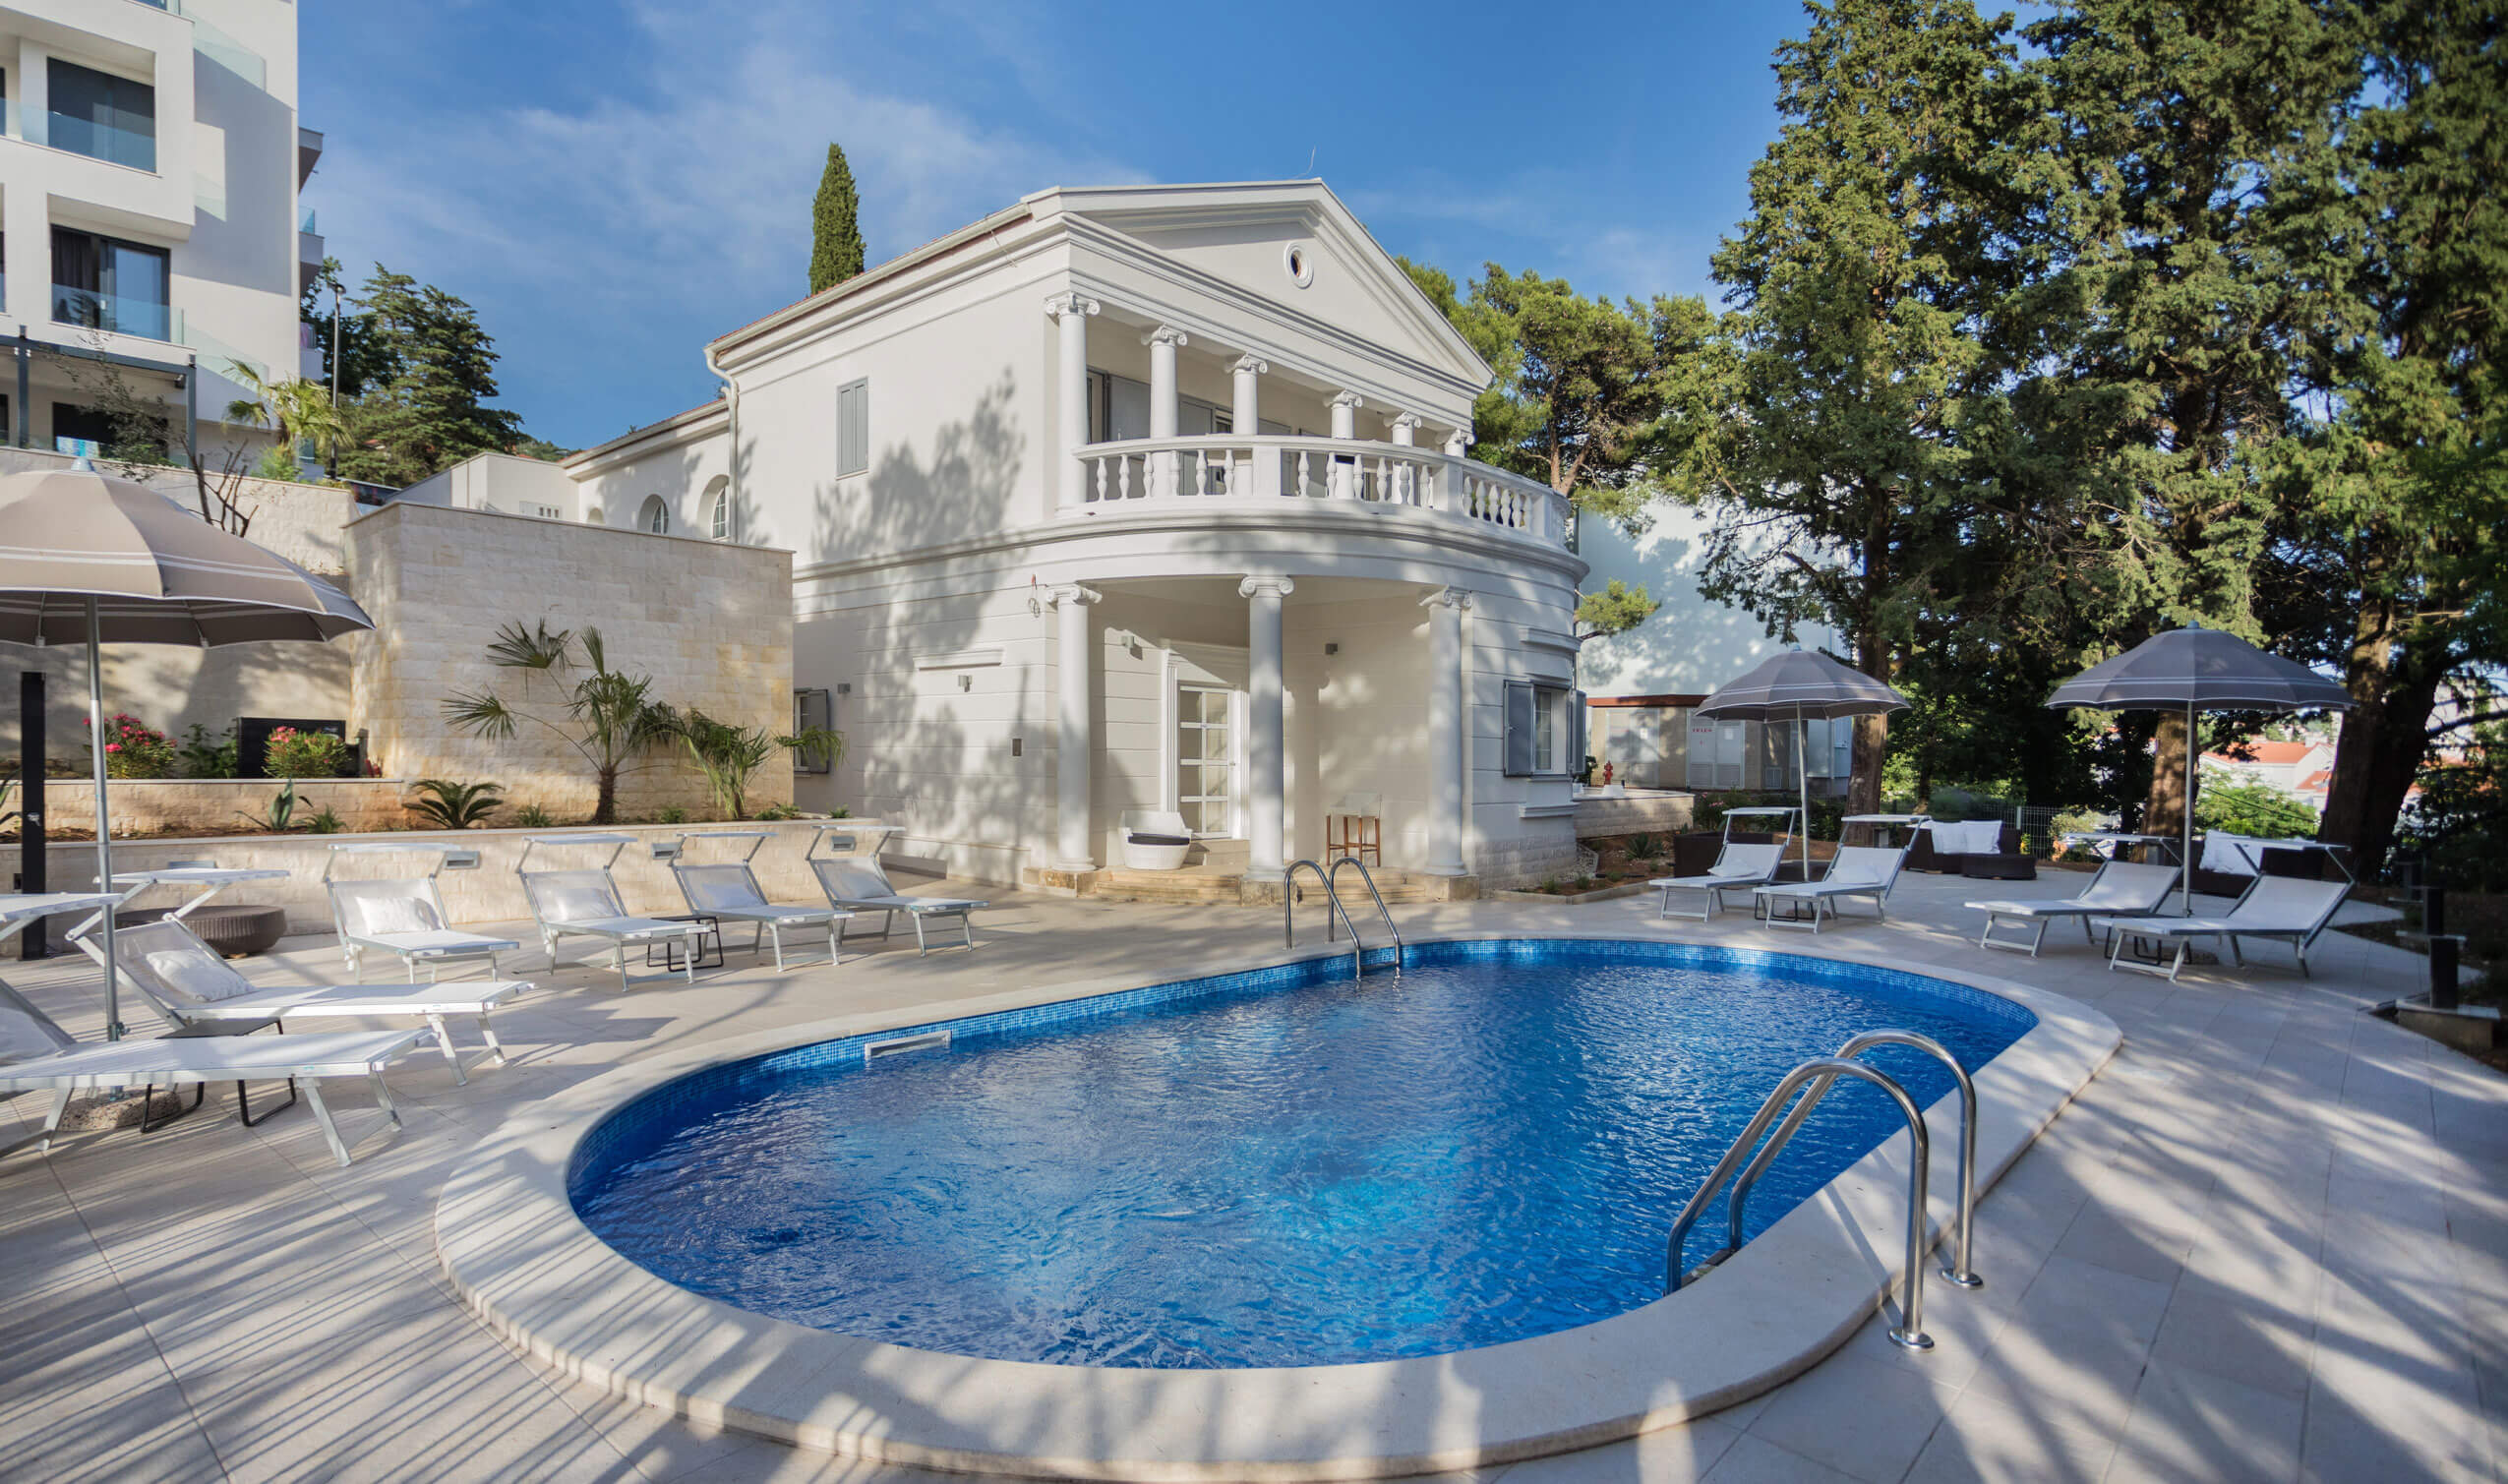 Villa Alta pool